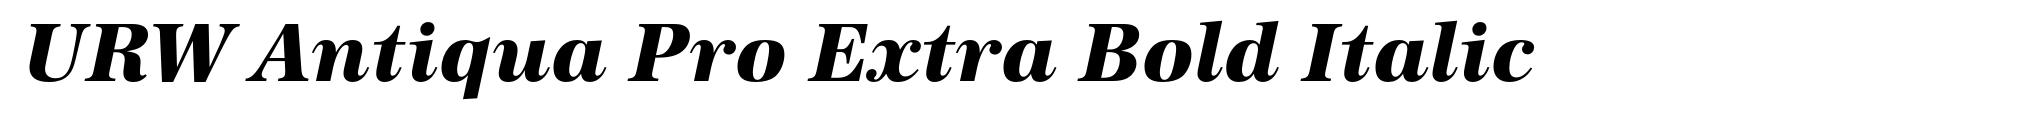 URW Antiqua Pro Extra Bold Italic image